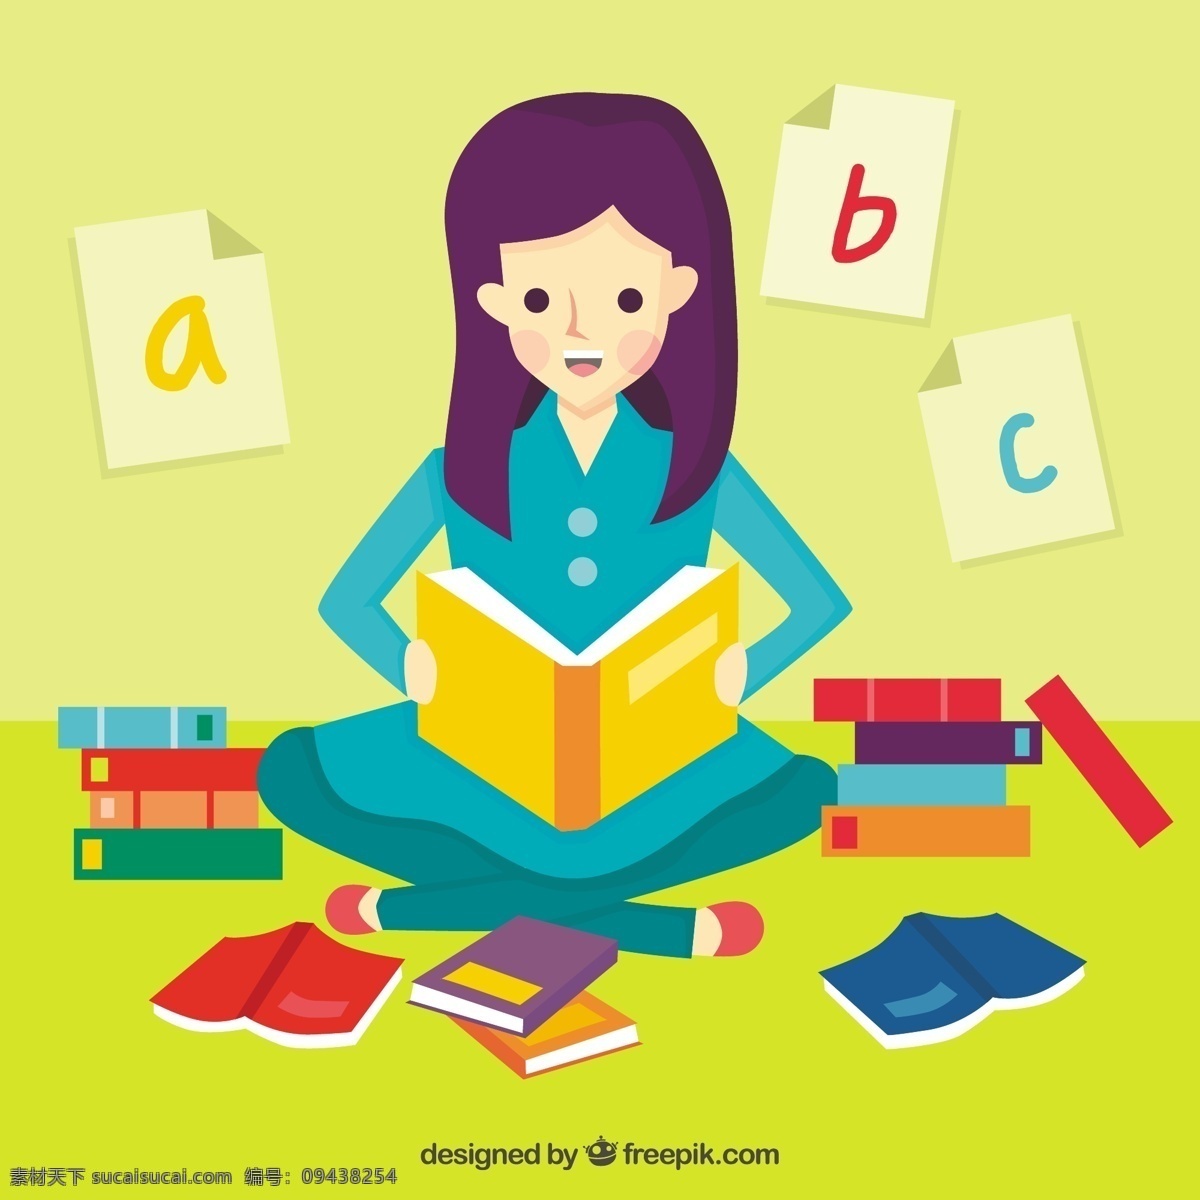 女孩 读书 多彩 背景 书籍 教育 世界 丰富多彩 创造性 学习 图书馆 写作 阅读 创造力 文化 故事 想象力 节日